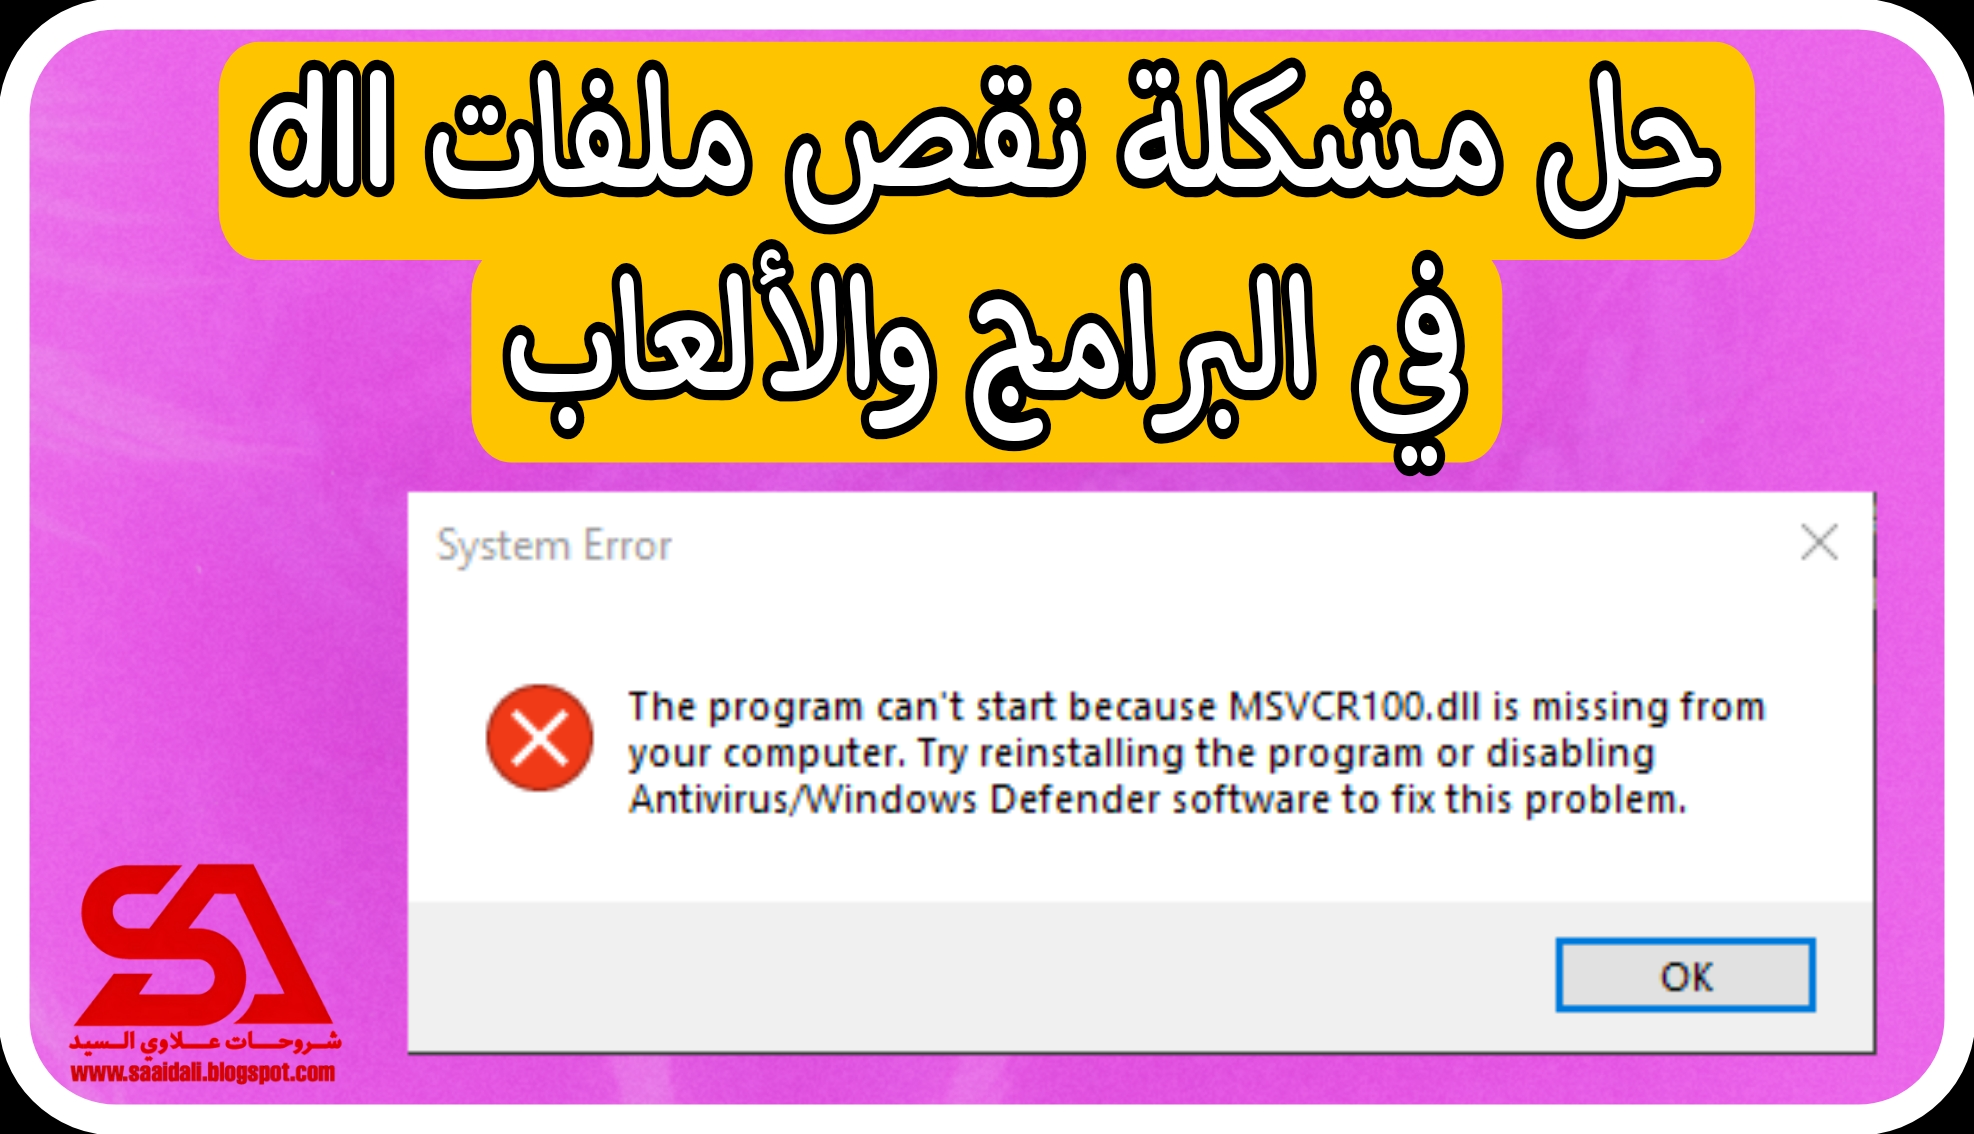 حل مشكلة msvcr100.dll في جميع الالعاب و البرامج